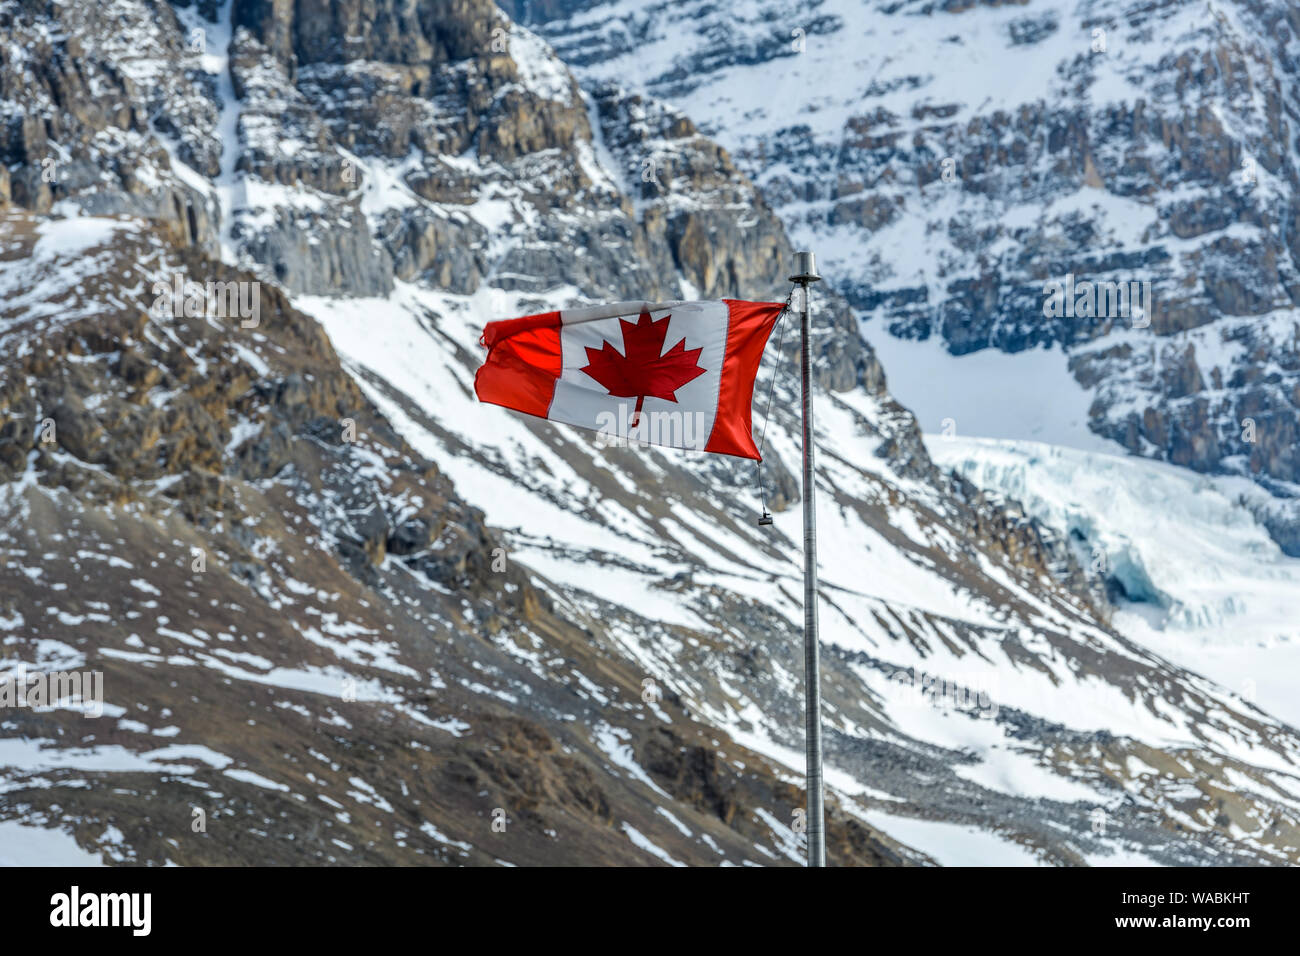 Schnee in den Bergen - eine kanadische Maple Leaf nationale Flagge an der Vorderseite des Schnee-bedeckten felsigen Berghängen, Jasper National Park, Alberta, Kanada. Stockfoto